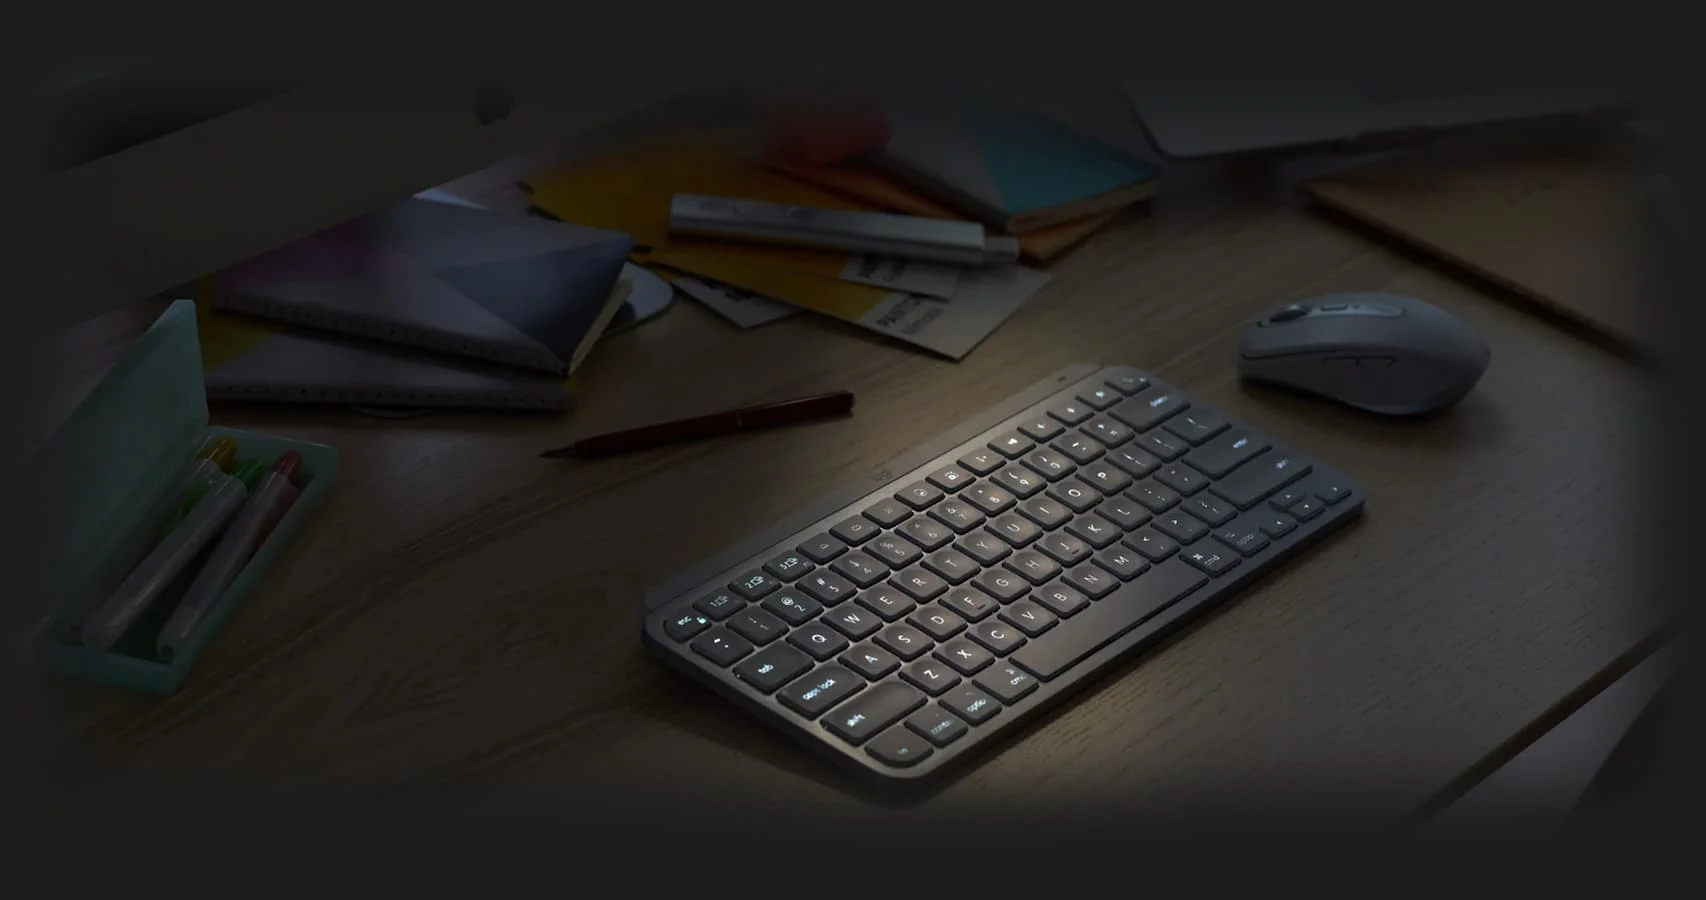 Клавиатура беспроводная Logitech MX Keys Mini для Mac Minimalist Wireless Illuminated (Pale Gray)